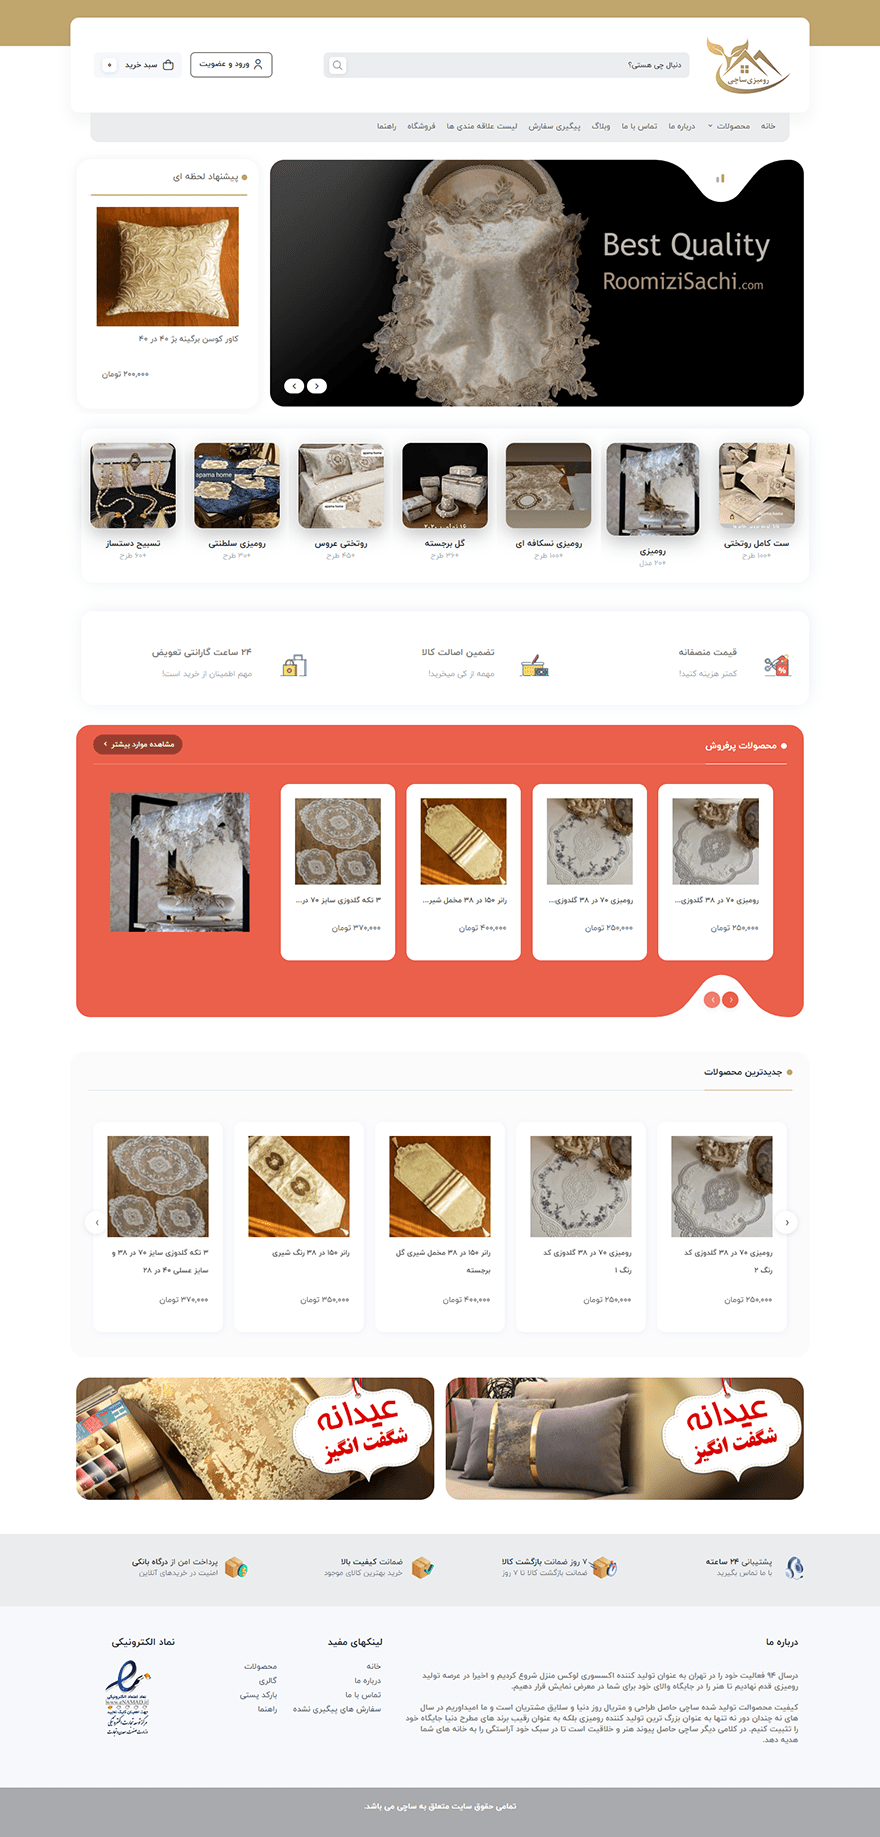 طراحی سایت فروشگاه رومیزی ساچی